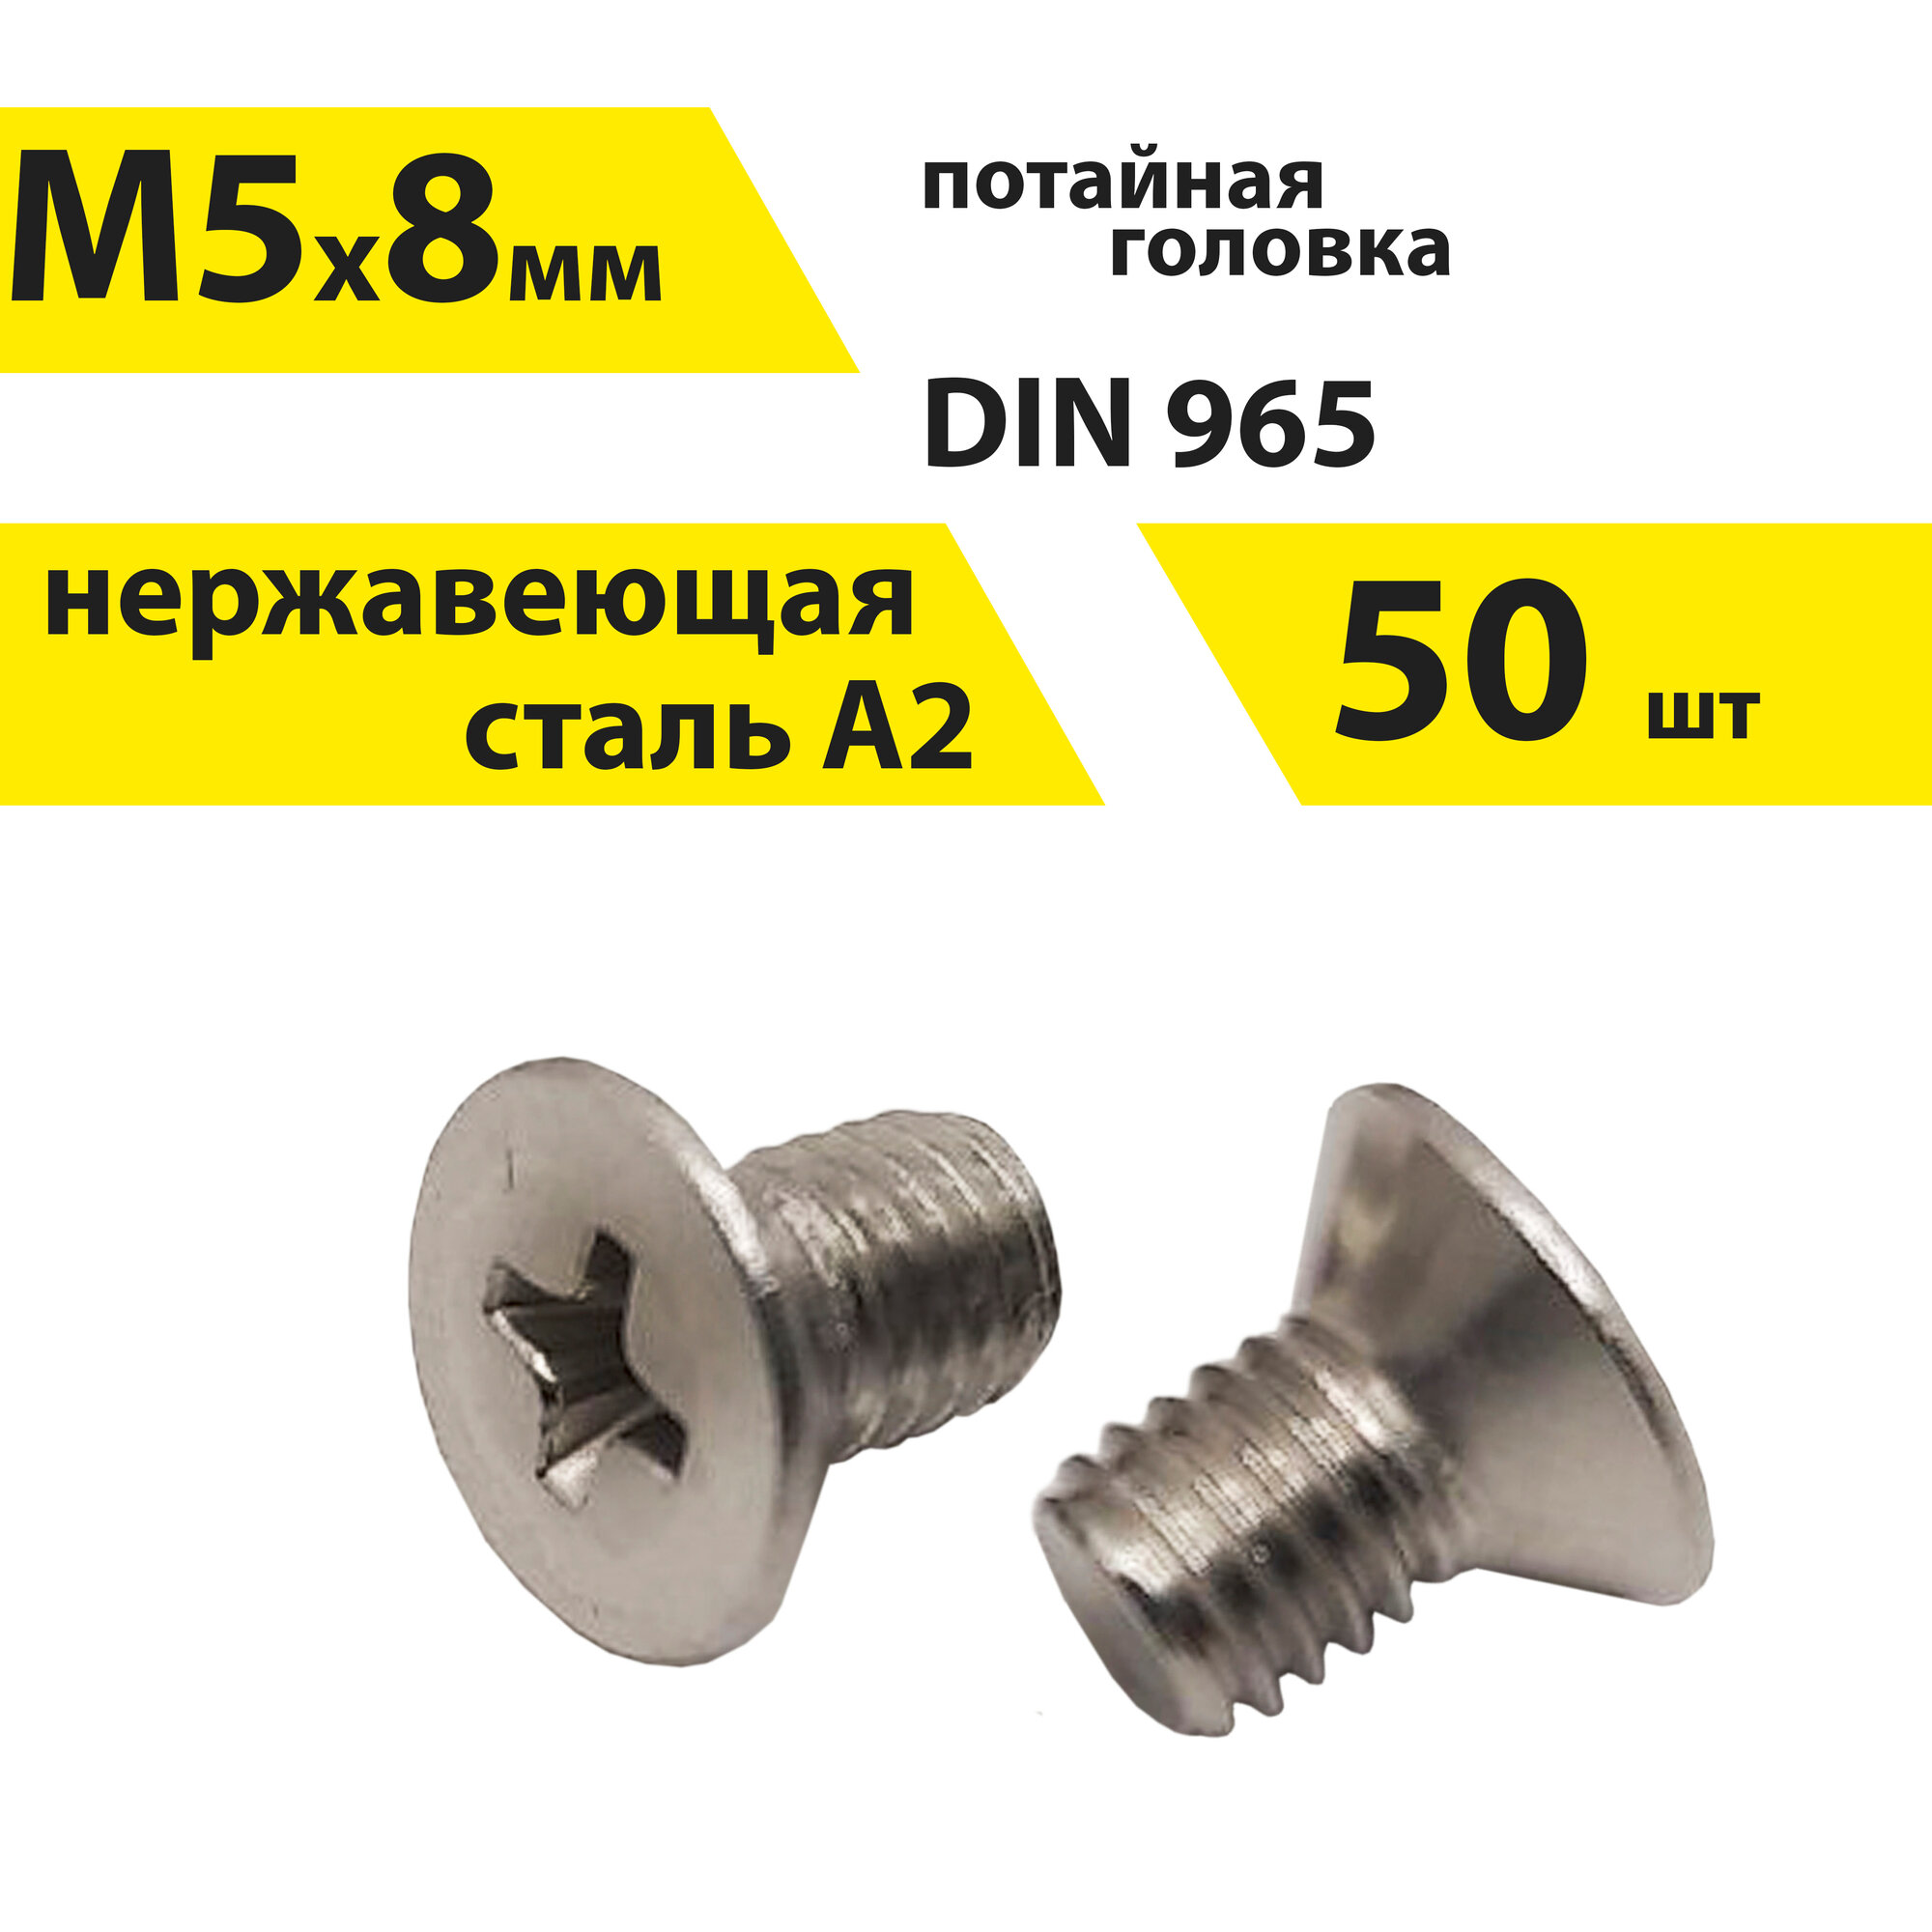 Винт М5х8 А2 нерж, 50 шт, DIN 965 потайной, арт. 146402